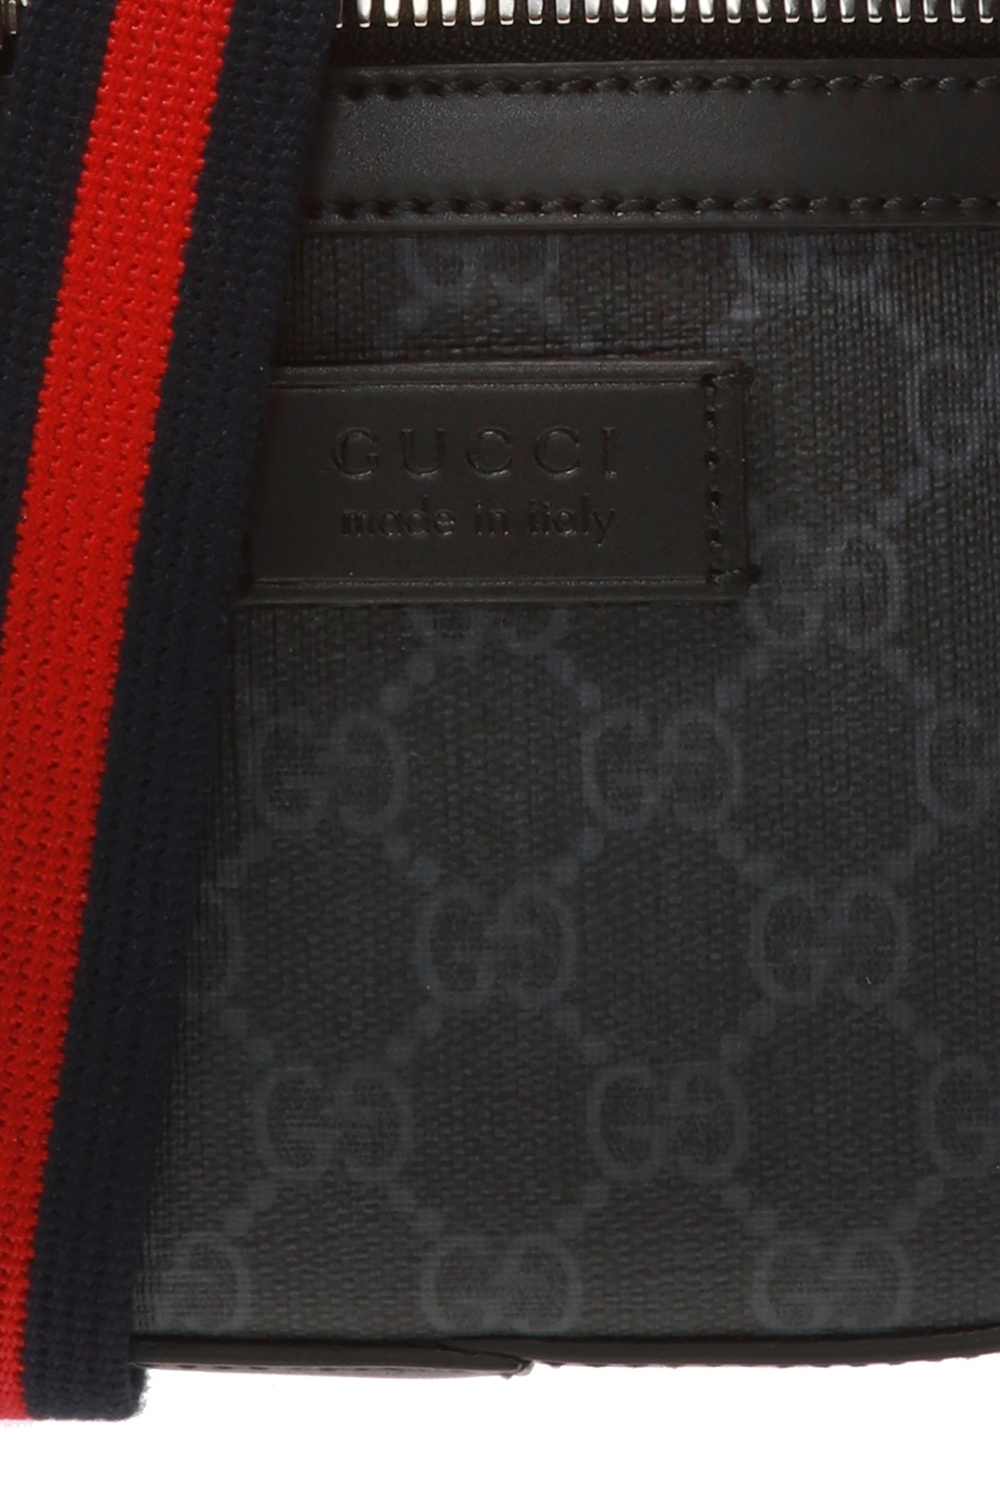 Gucci Branded shoulder bag